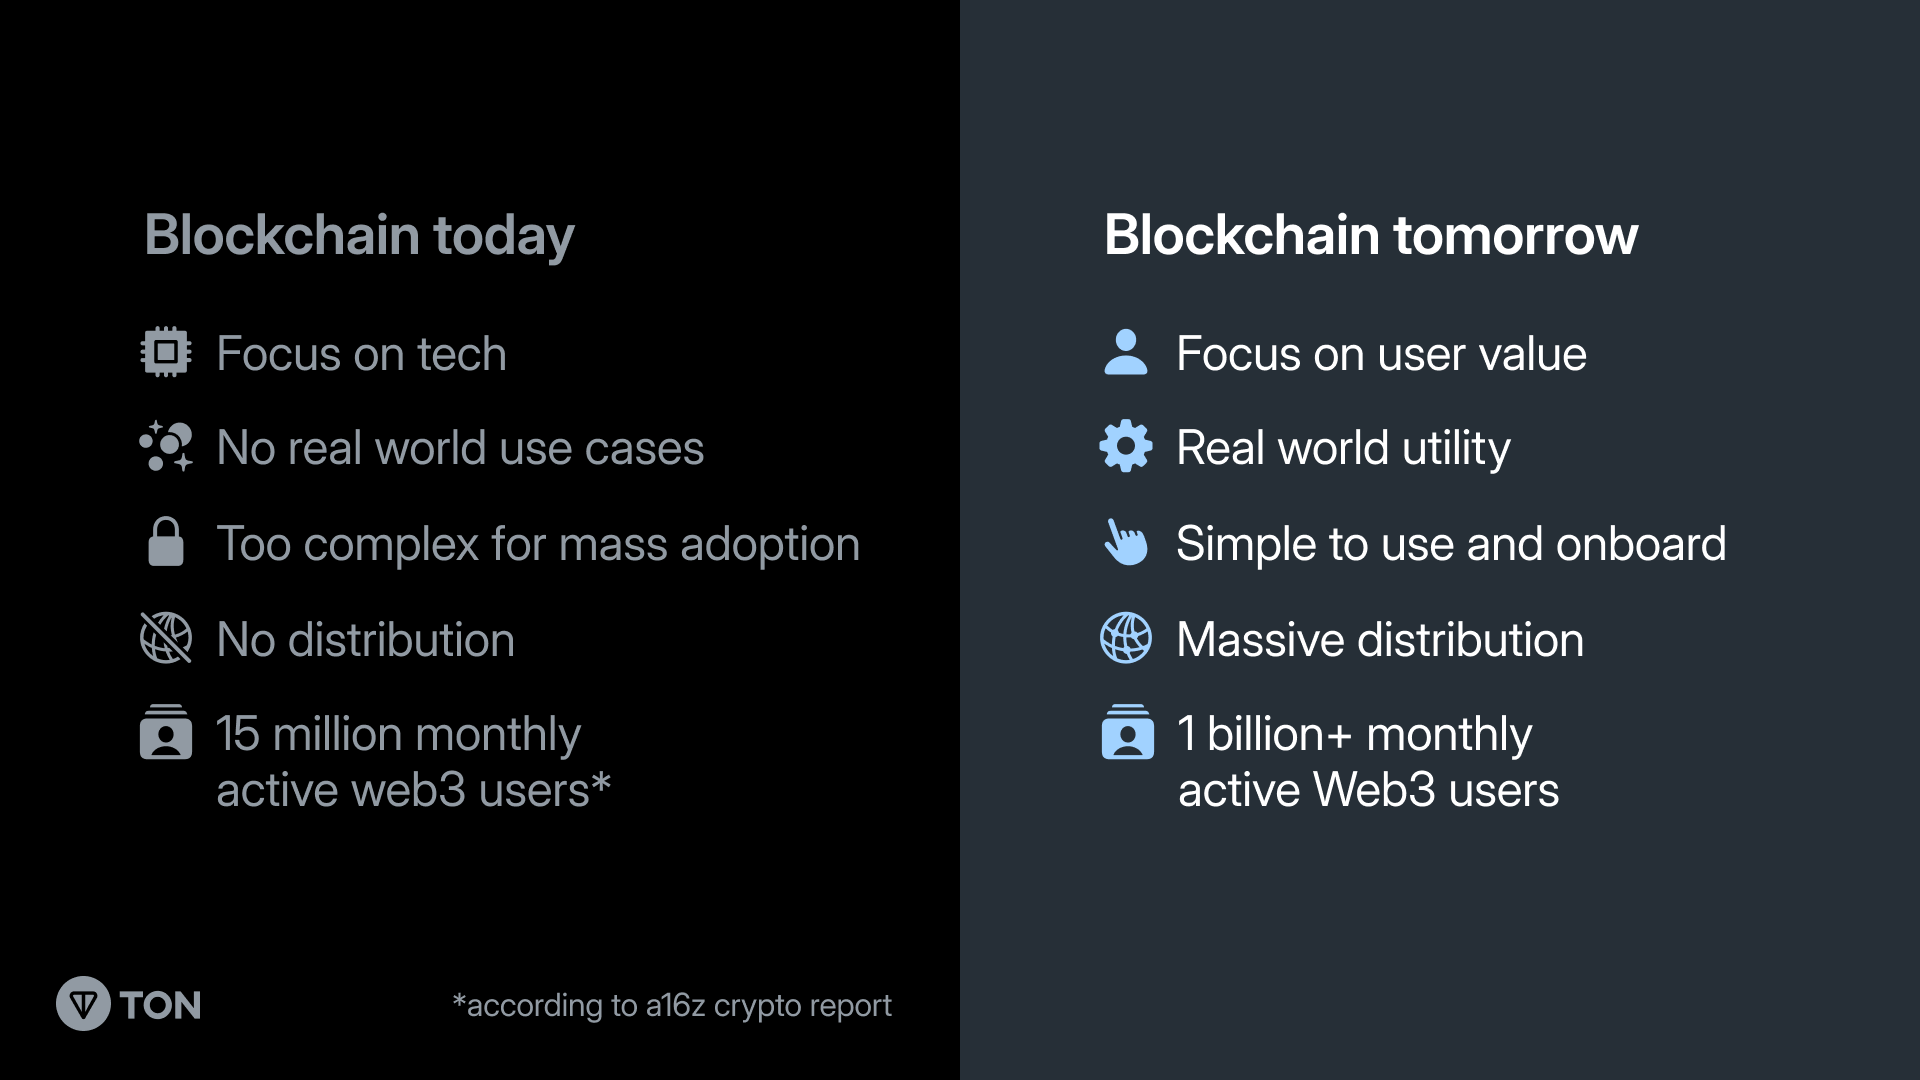 La technologie blockchain du futur selon le réseau TON - Source : Ton